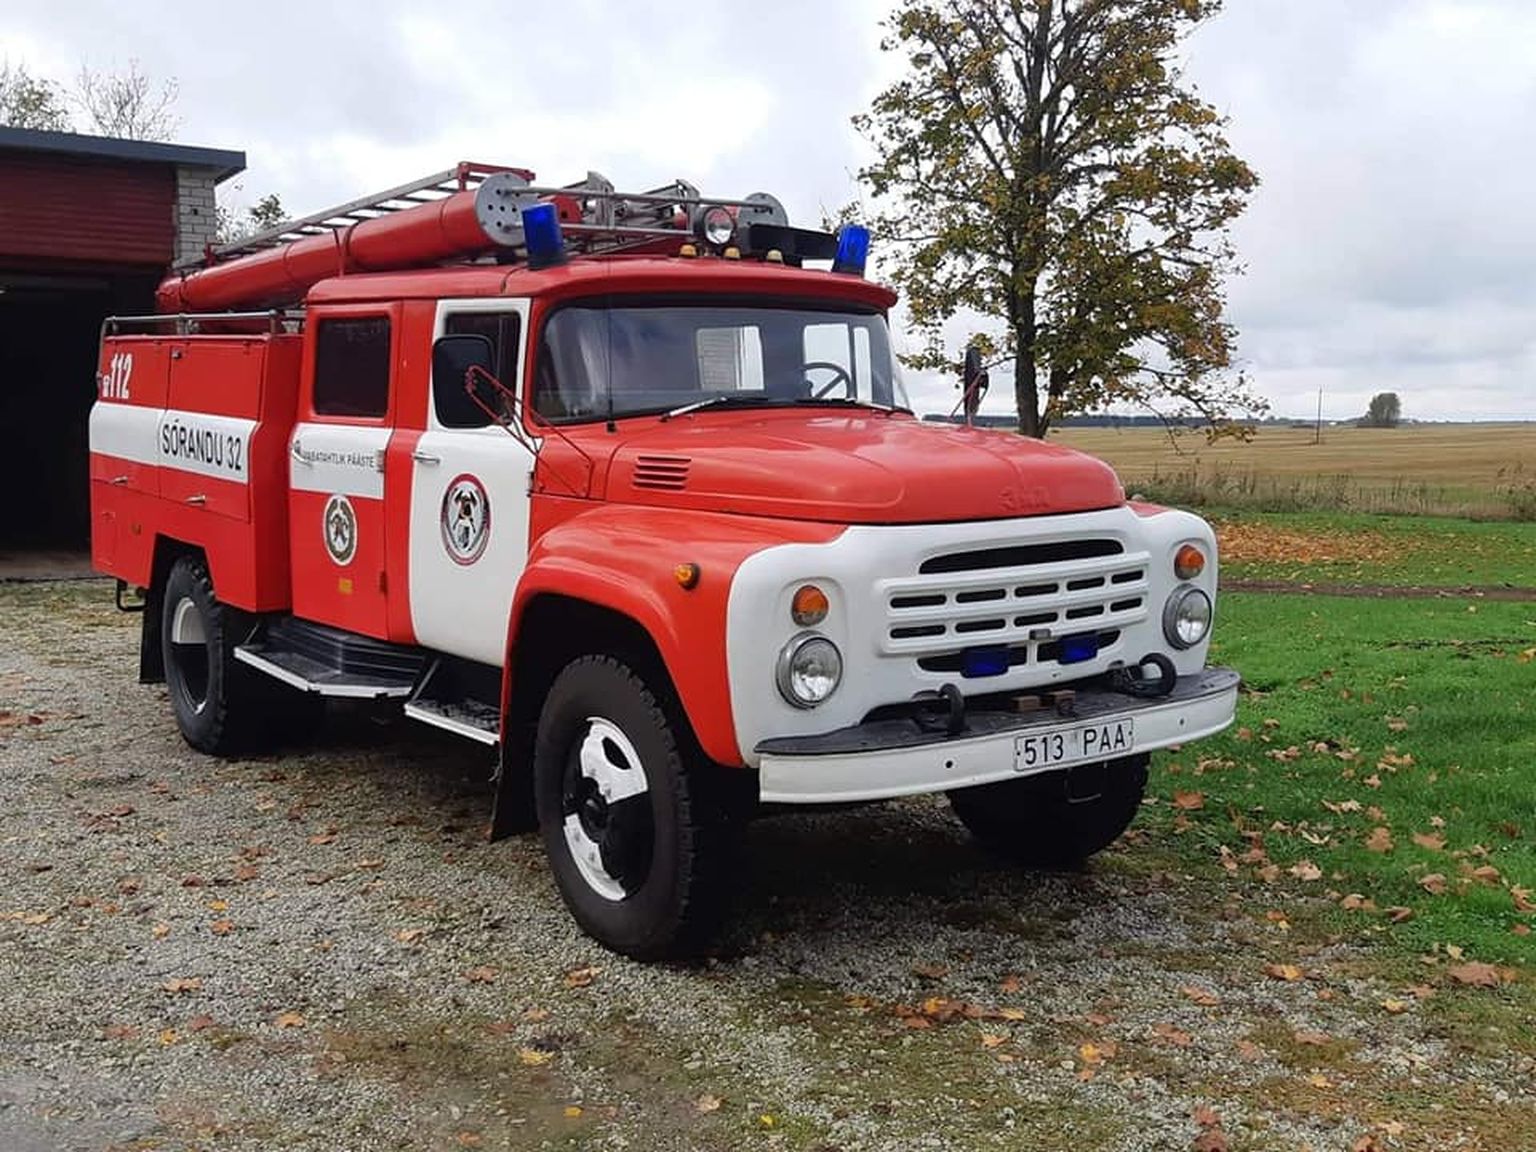 Kel huvi nõugkogude-aegse tuletõrjeauto soetamiseks, siis Sõrandu vabatahtlike käest saab masina 4000 euroga.